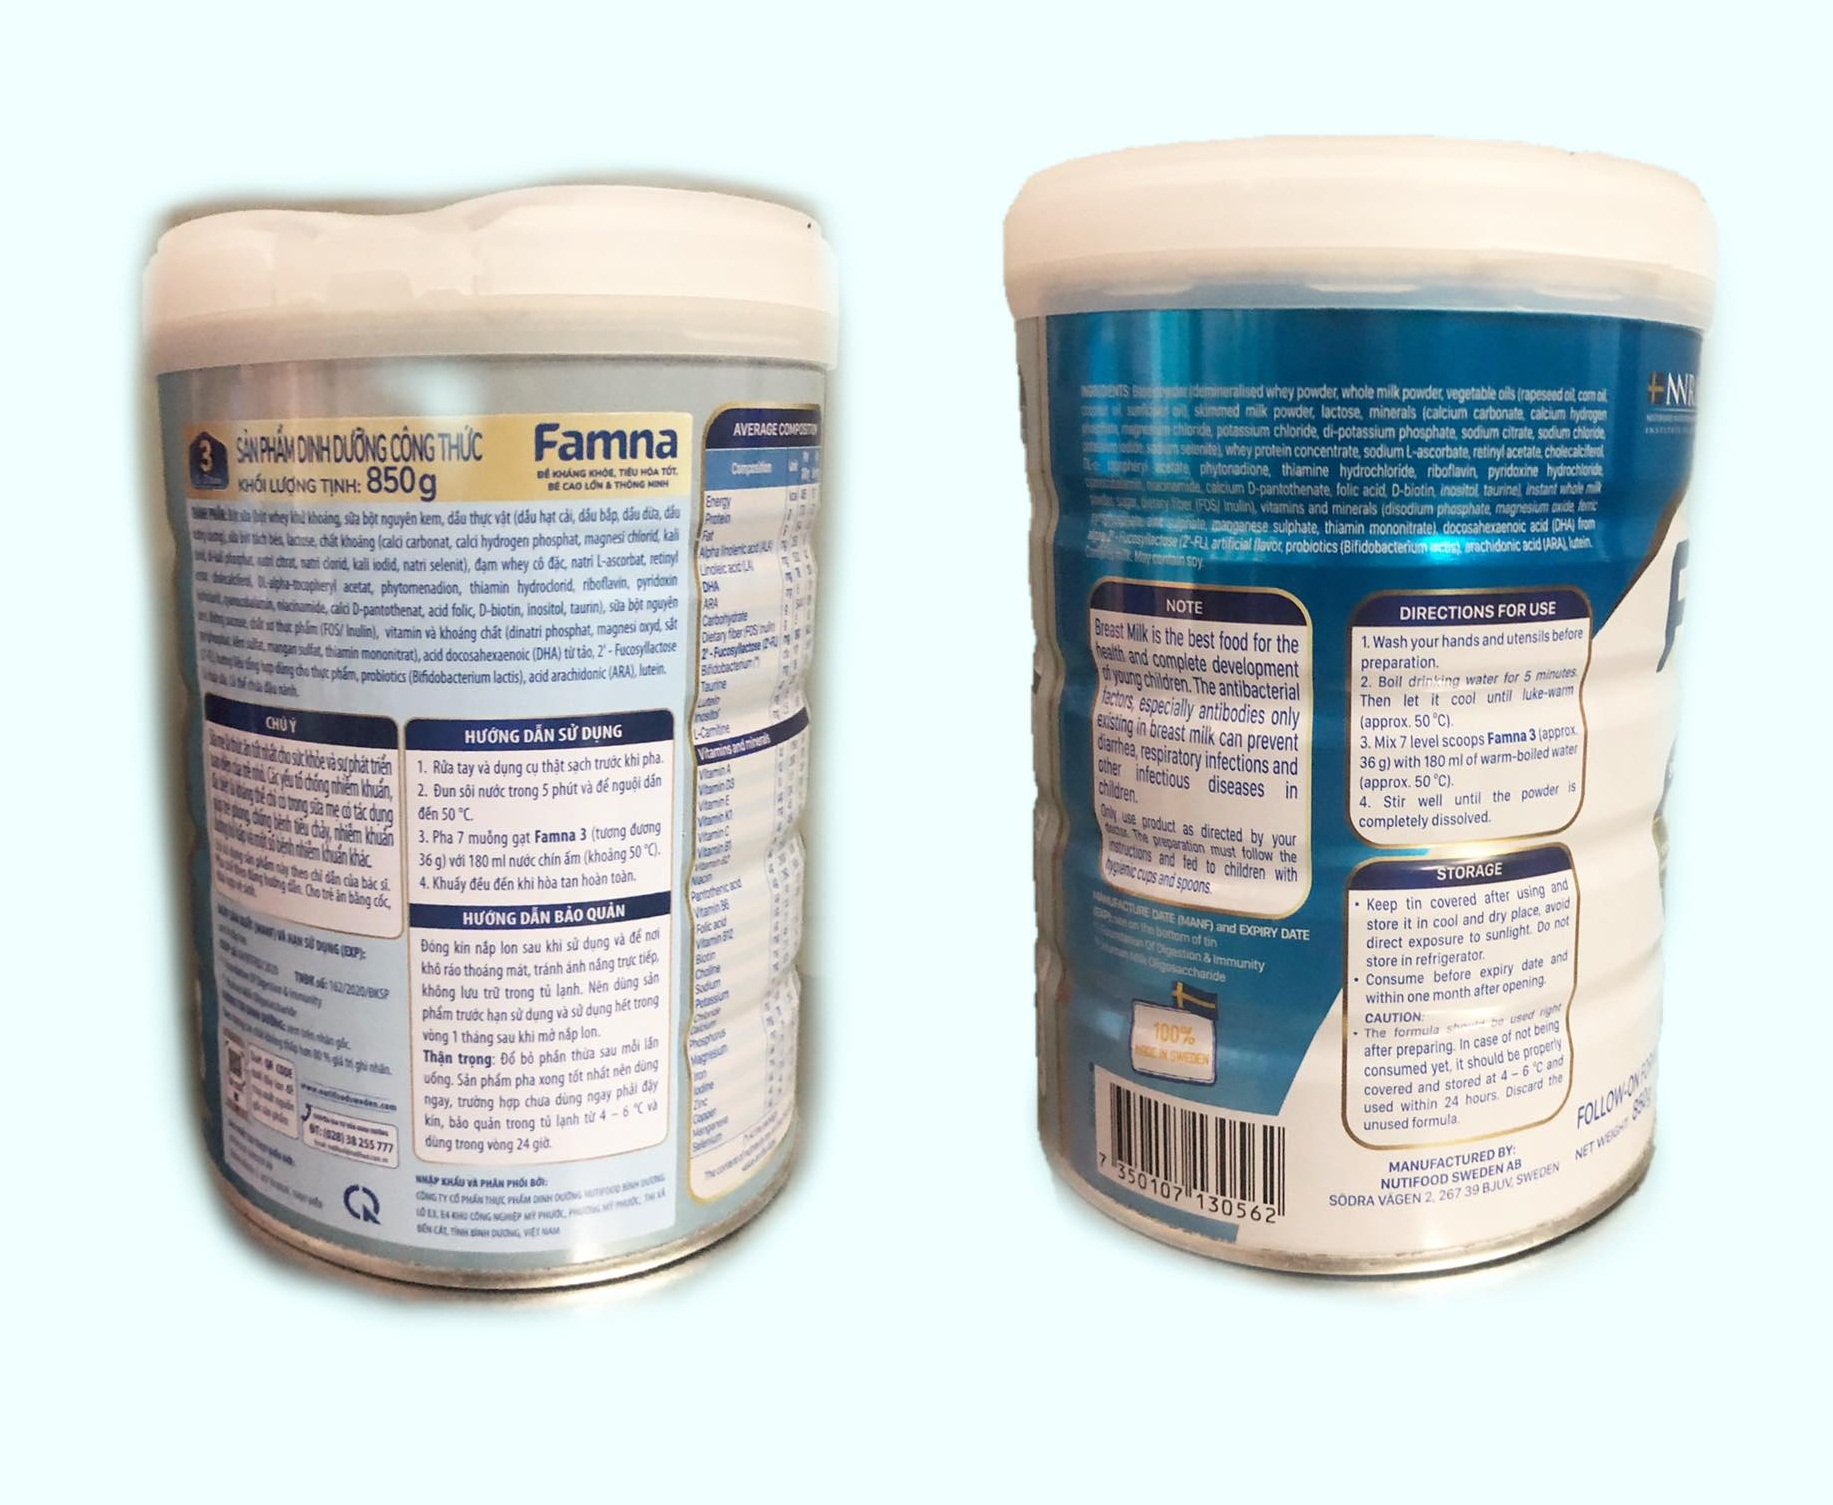 Sữa Famna step 3 850g - Đề kháng khoẻ, tiêu hoá tốt, bé cao lớn và thông minh - Hàng chính hãng của NutiFood